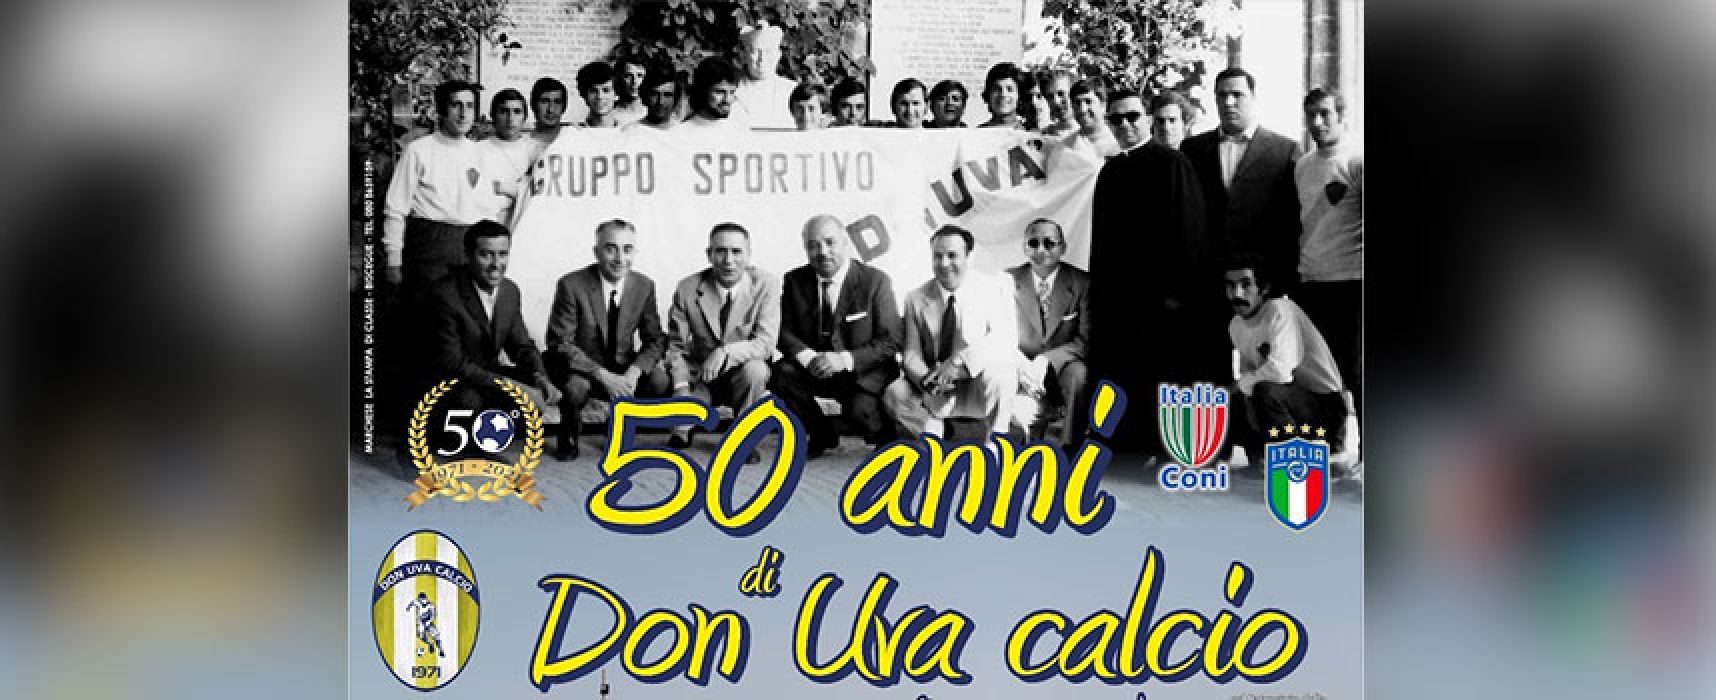 Il Don Uva Calcio compie 50 anni, oggi giornata di eventi celebrativi / PROGRAMMA